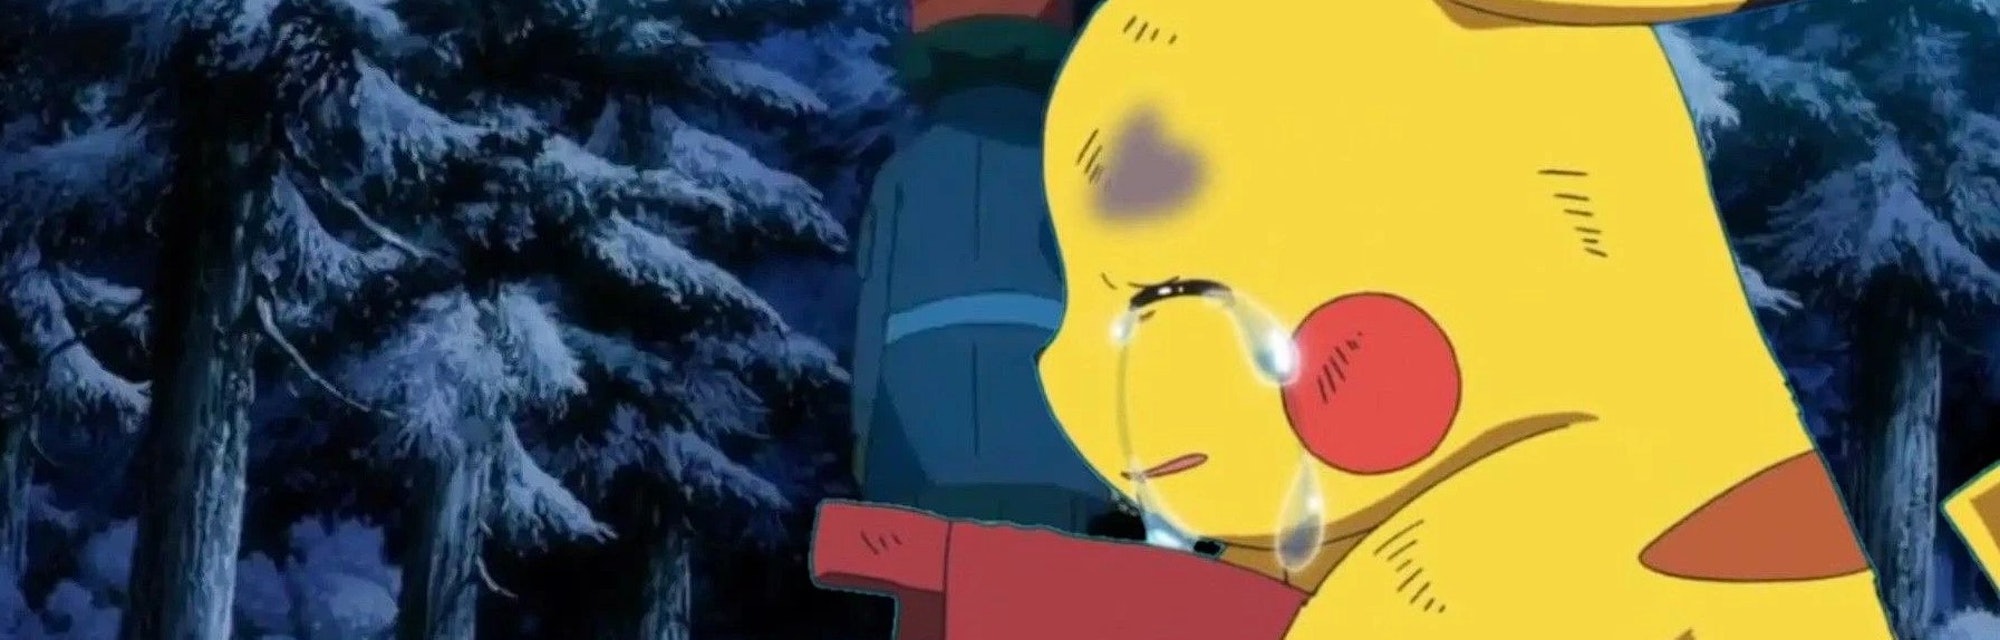 pikachu crying